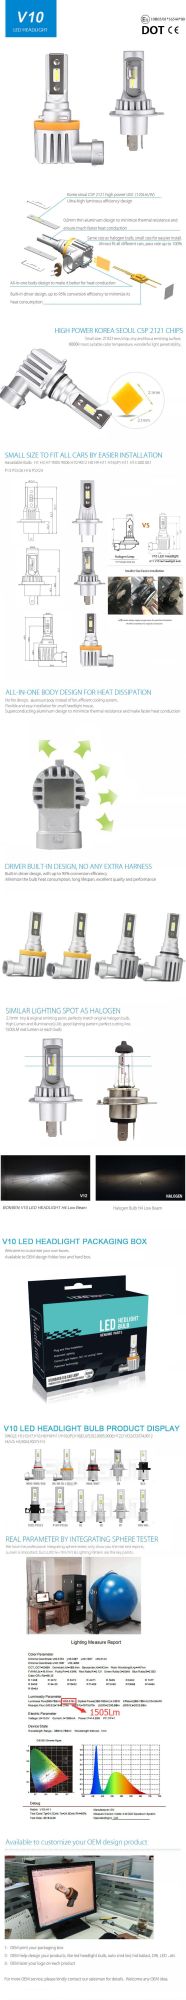 Latest E-MARK DOT Automotive V9 V10 V10s 9005 9006 H7 H8 H9 H11 H11b LED Bulb for Headlight